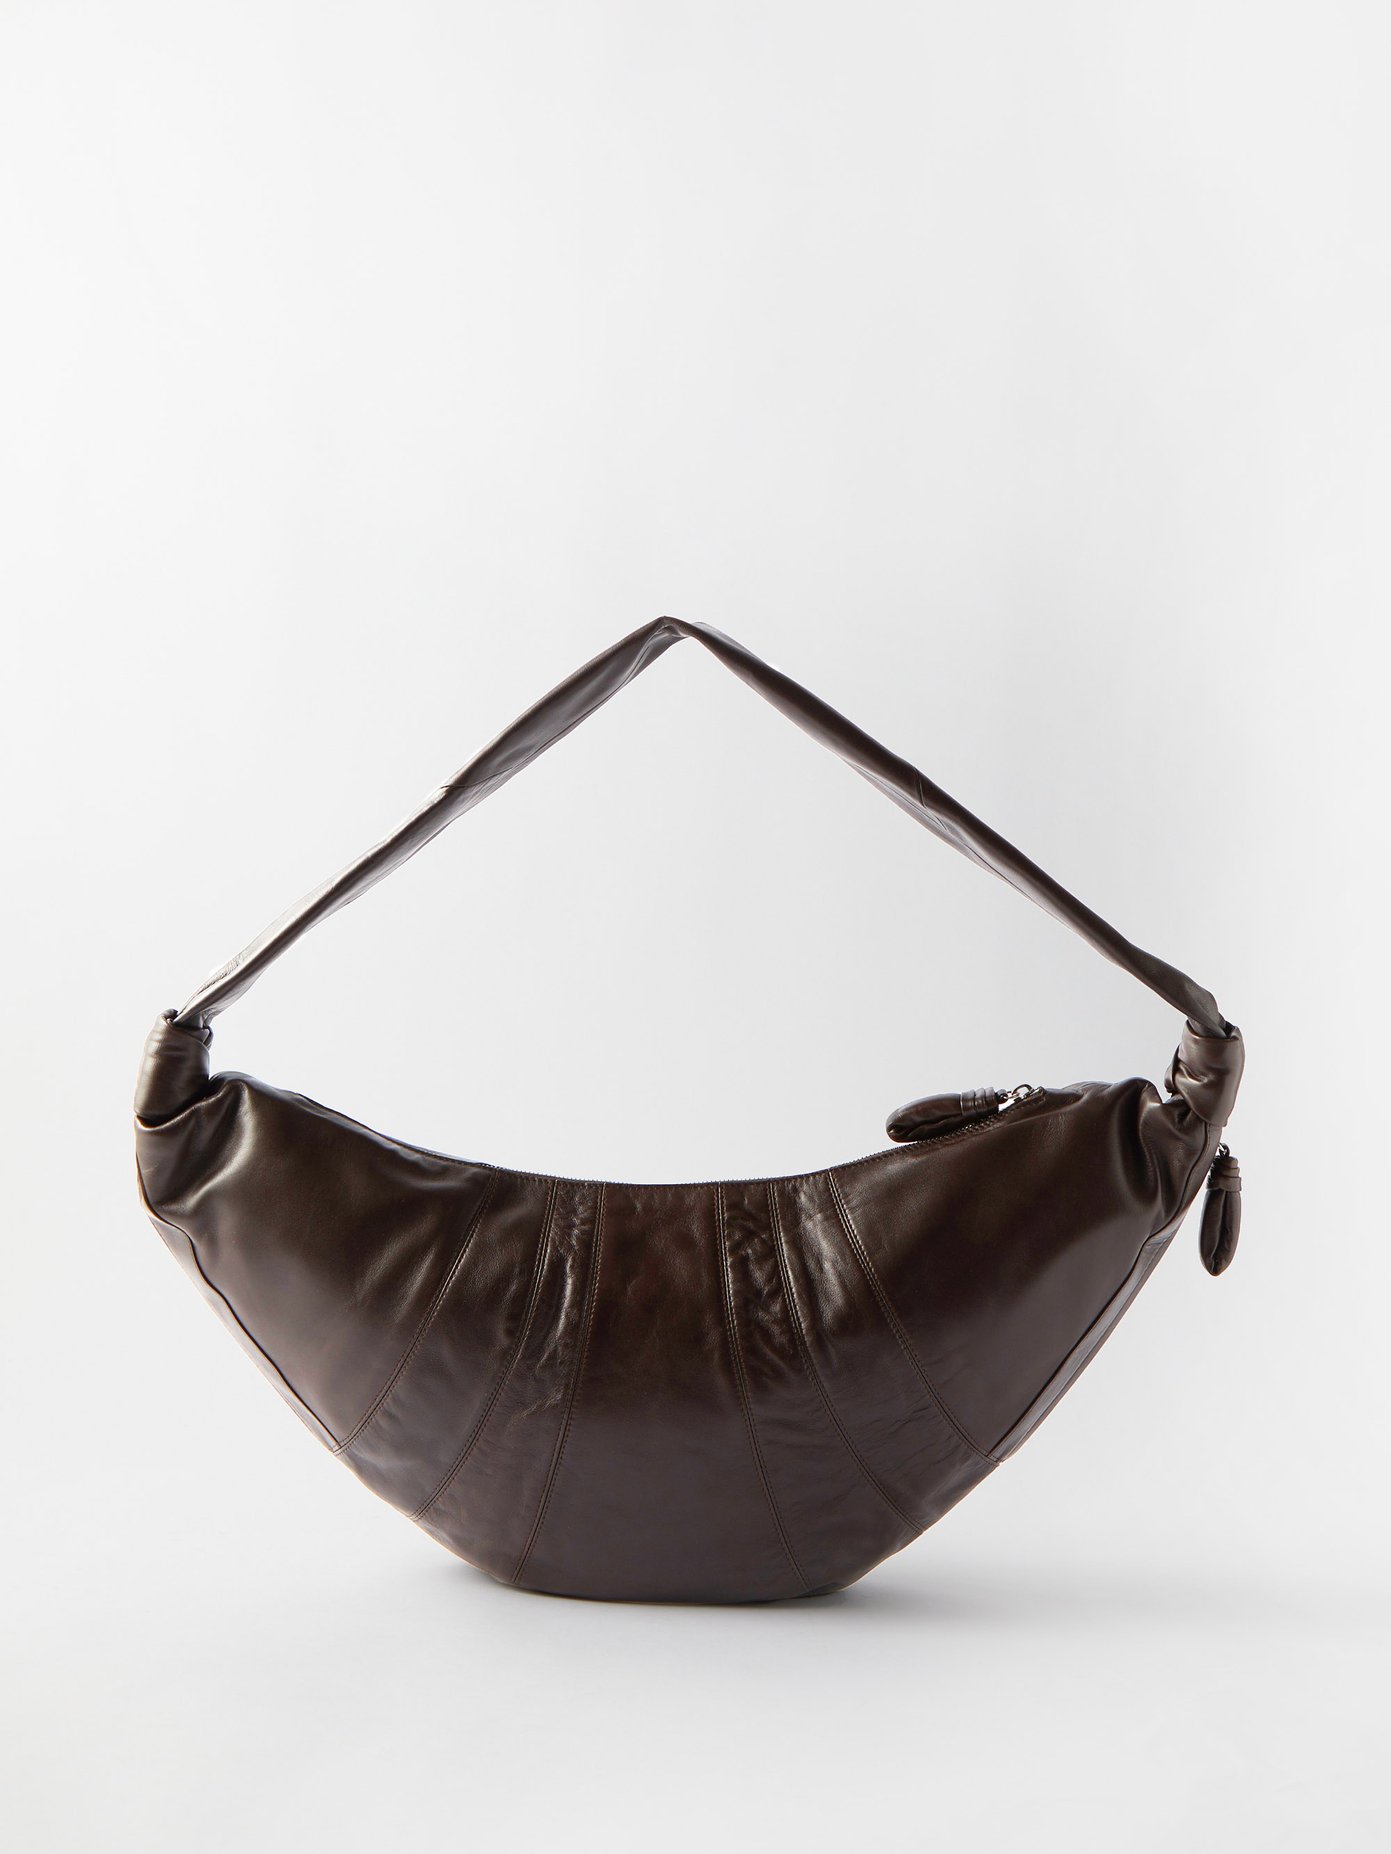 22 S/S 르메르 크로와상 범백 라지 Lemaire Brown Croissant large leather belt bag